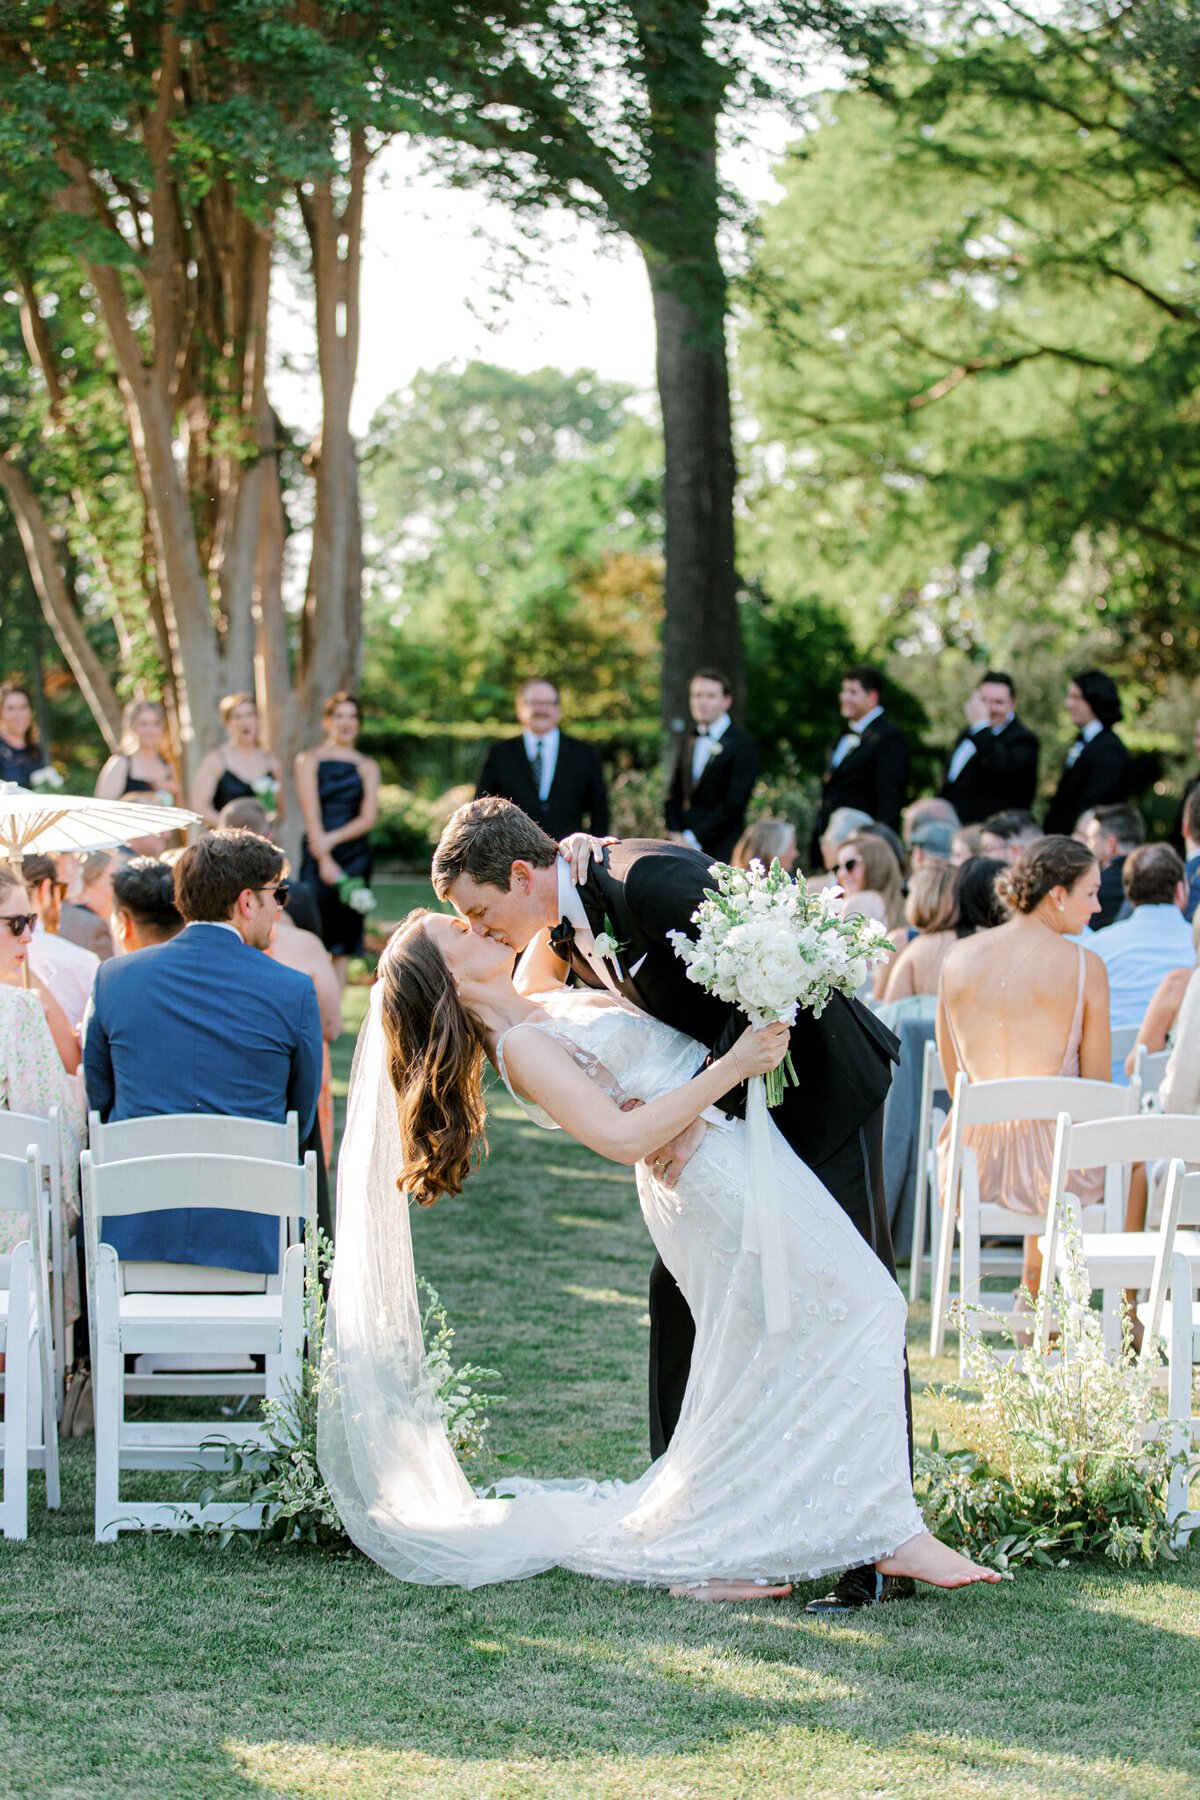 Gena & Matt's Wedding at the Dallas Arboretum | Dallas Wedding Photographer | Sami Kathryn Photography-160